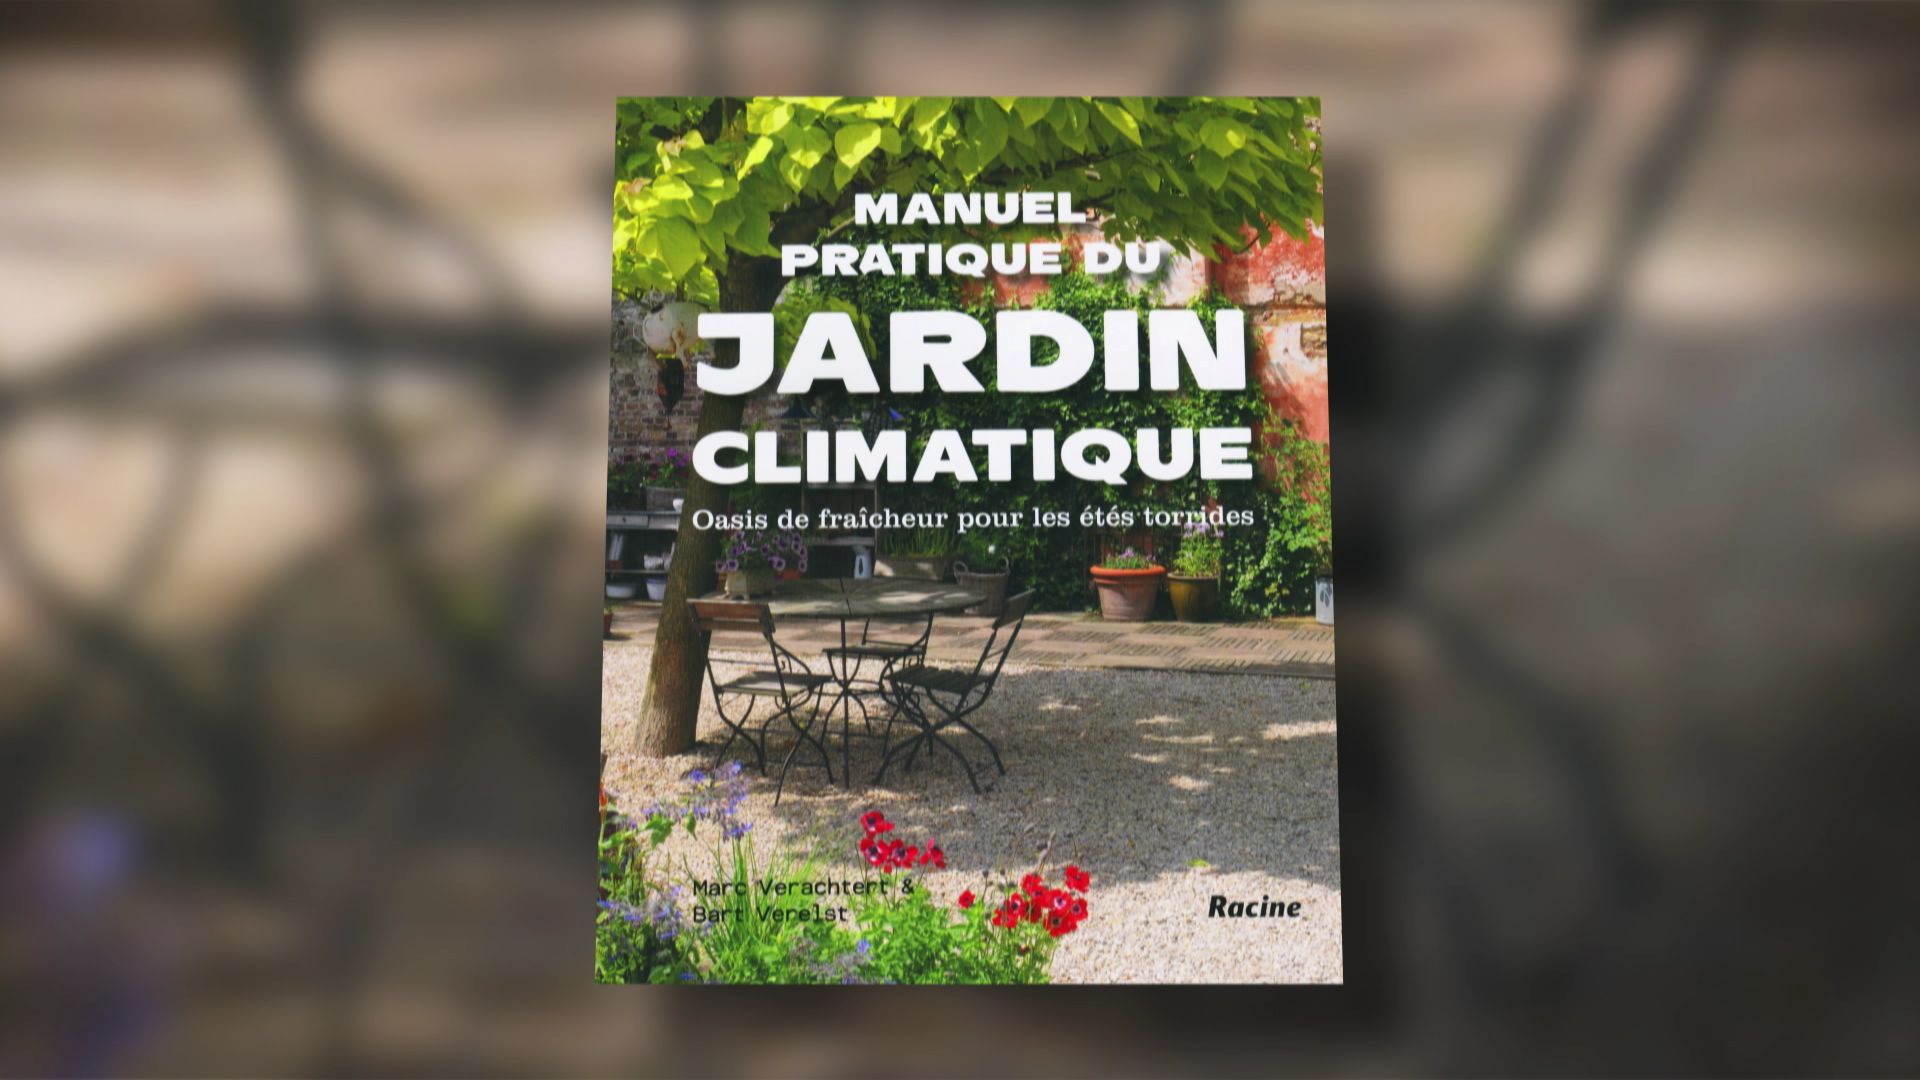 Livre "Manuel pratique du jardin climatique" de Marc Verachtert et Bart Verelst chez Racine